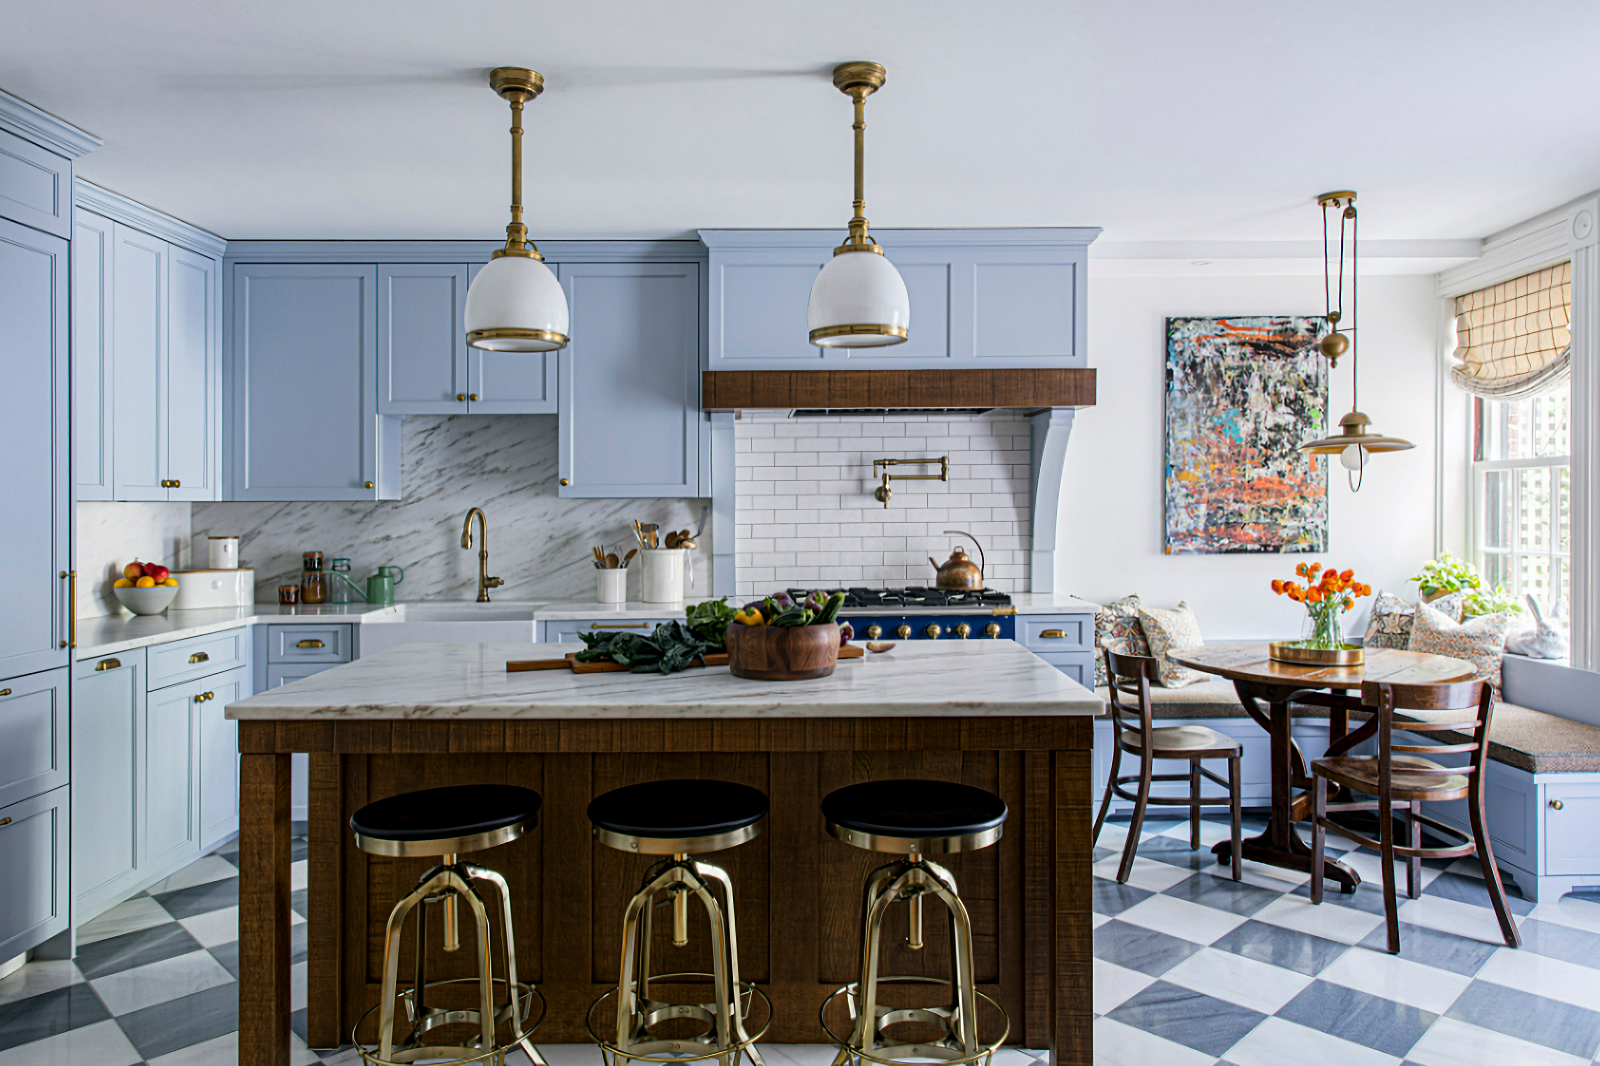 old world kitchen in blue